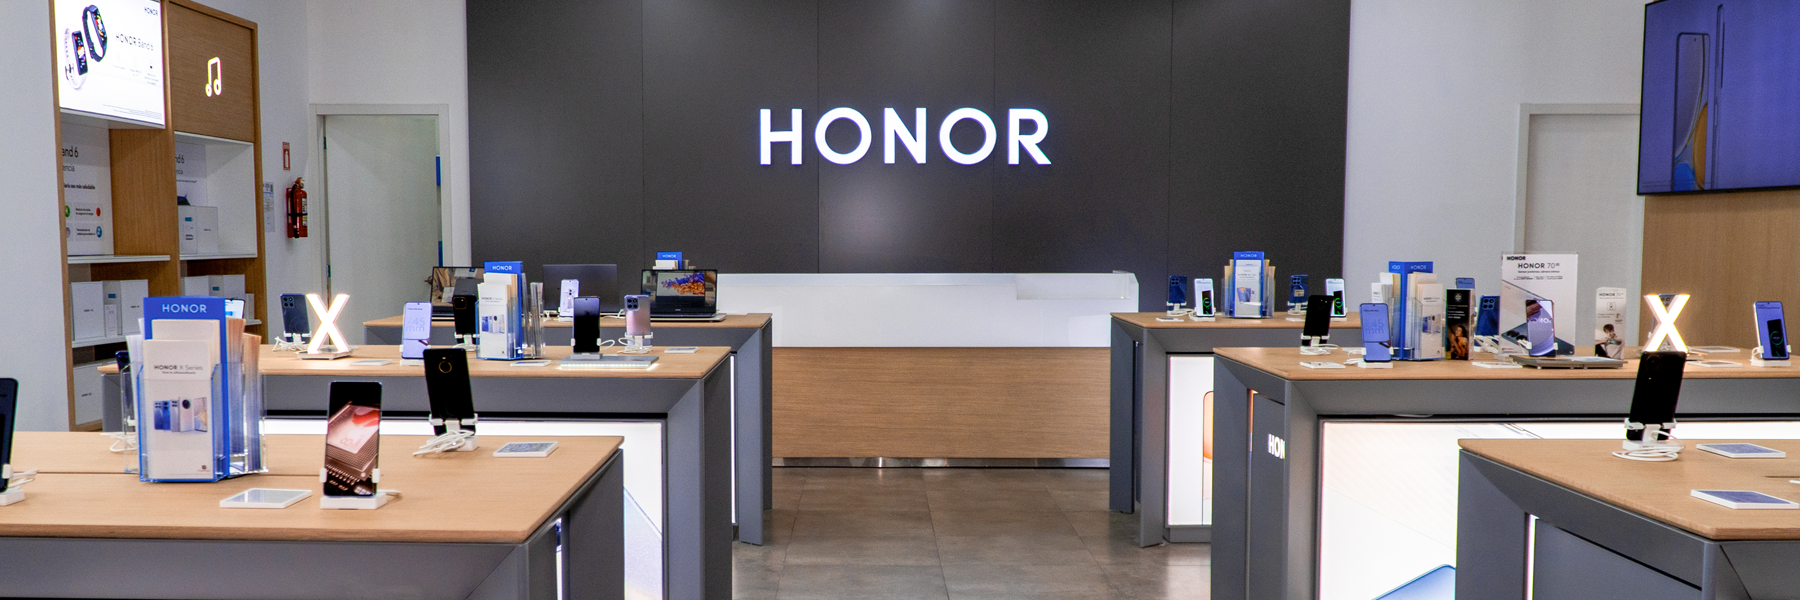 Honor 70, el smartphone ideal para los amantes de la fotografía y creación  de contenido